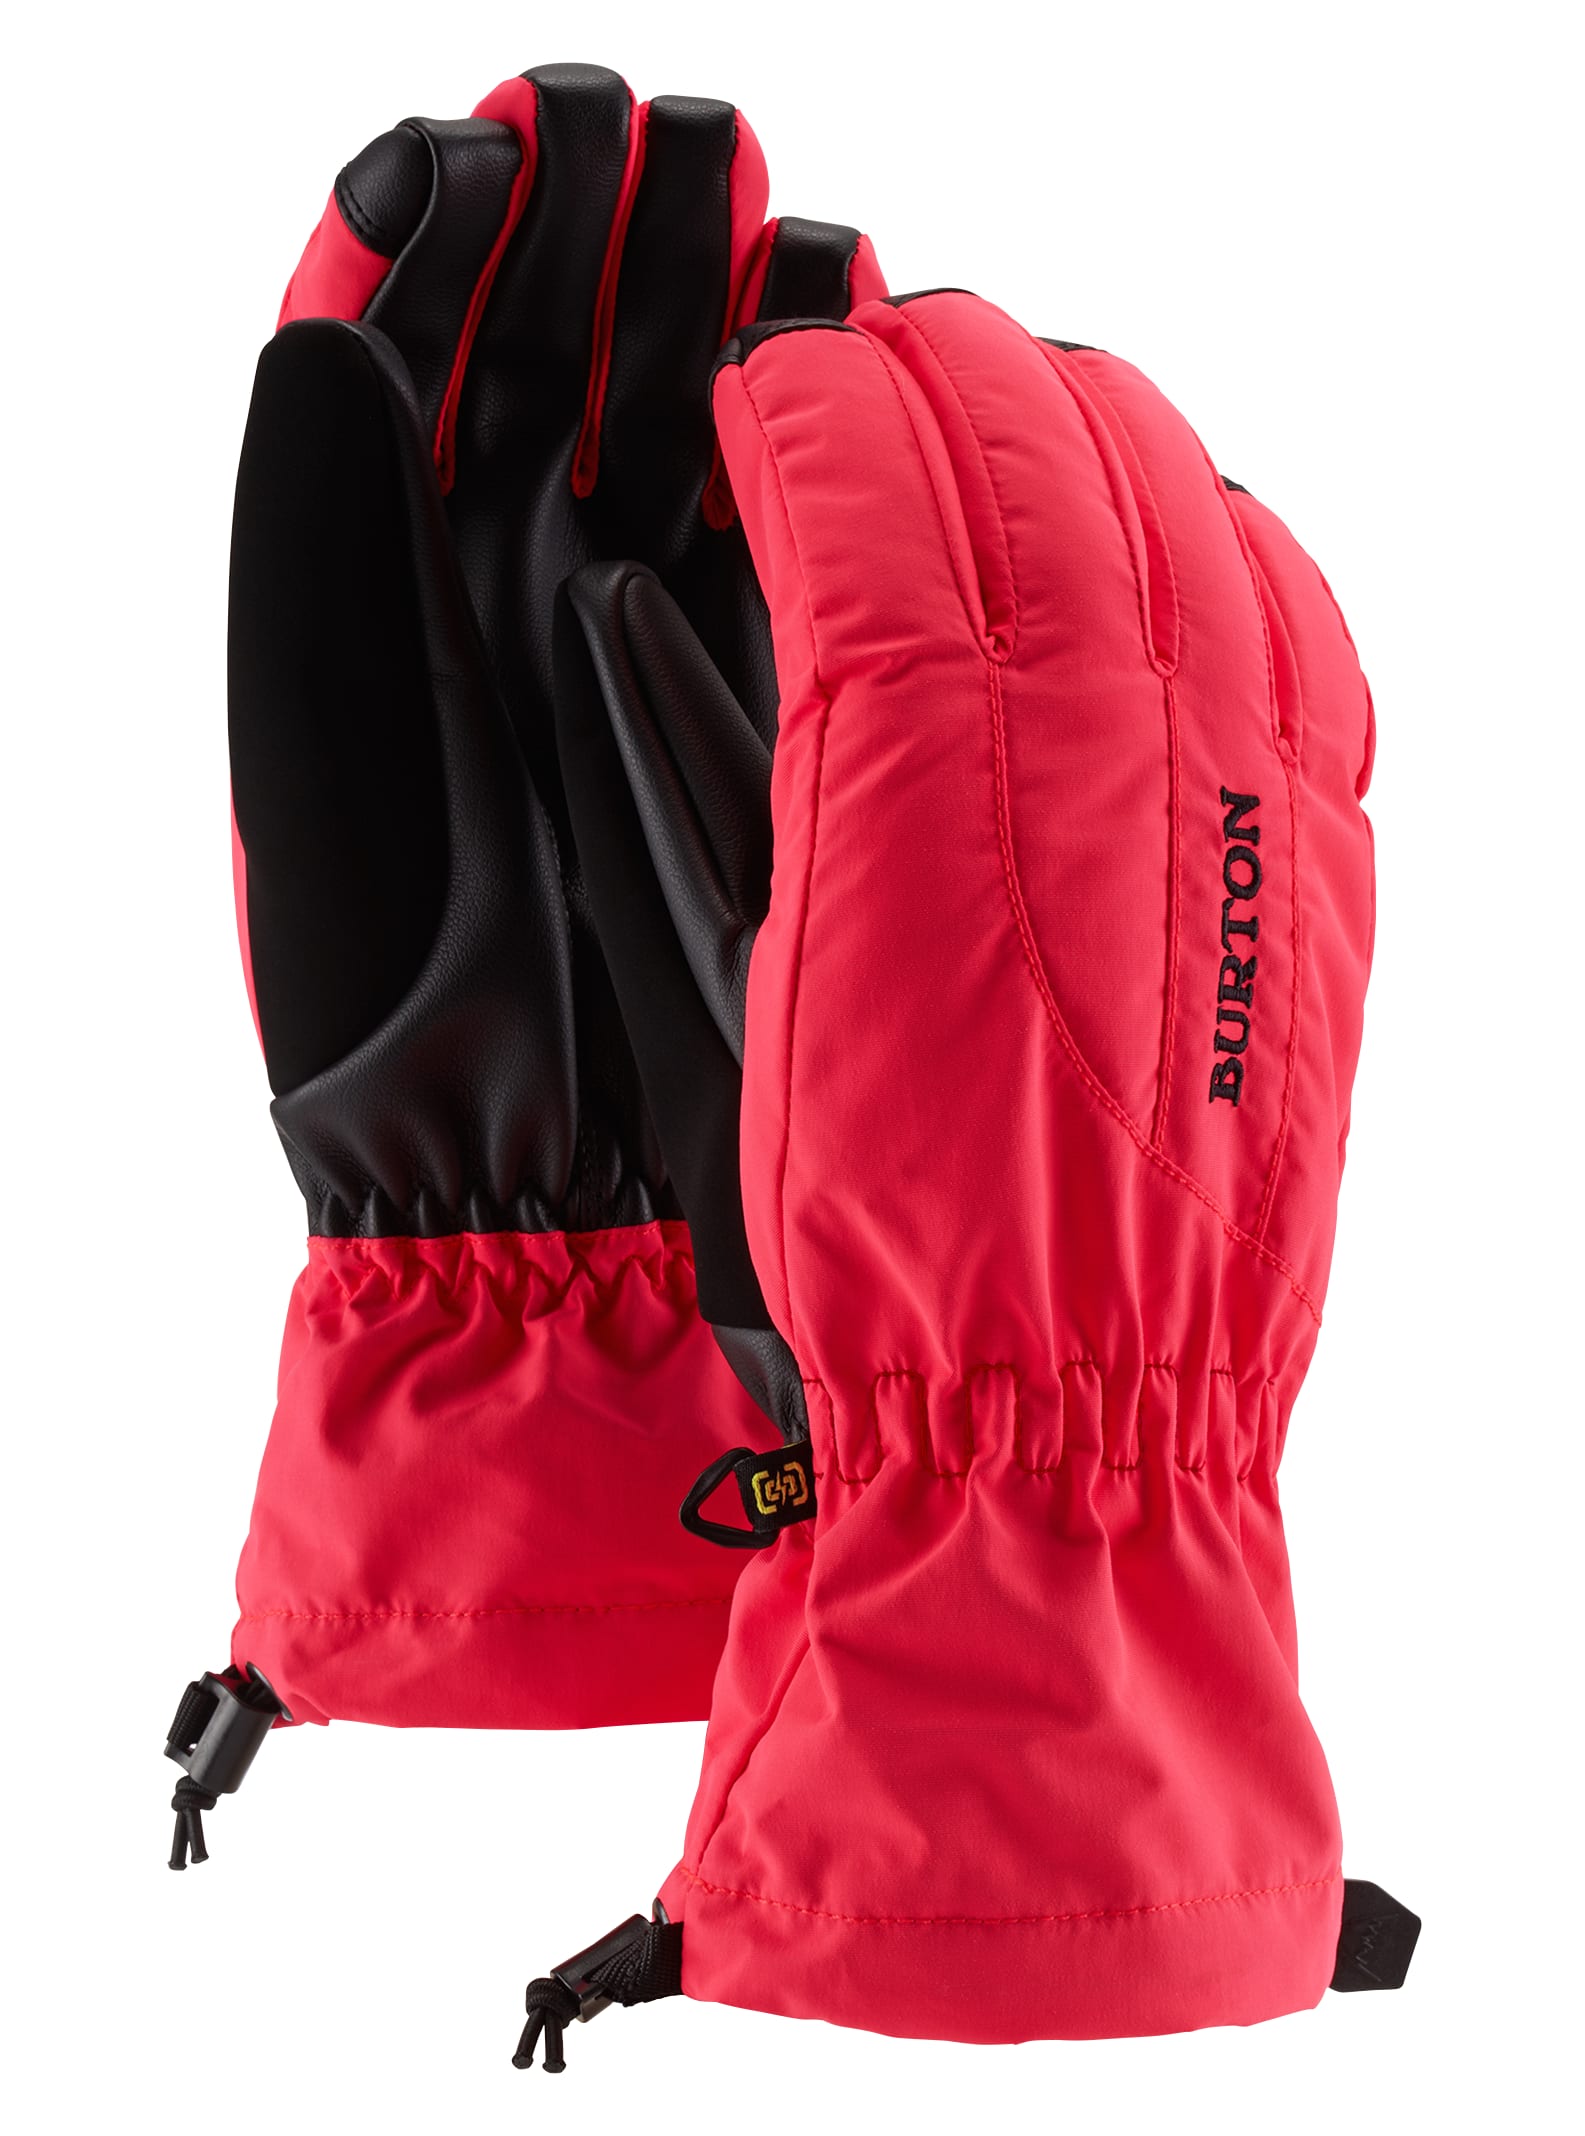 Women's Gloves & Mittens | Burton Snowboards US